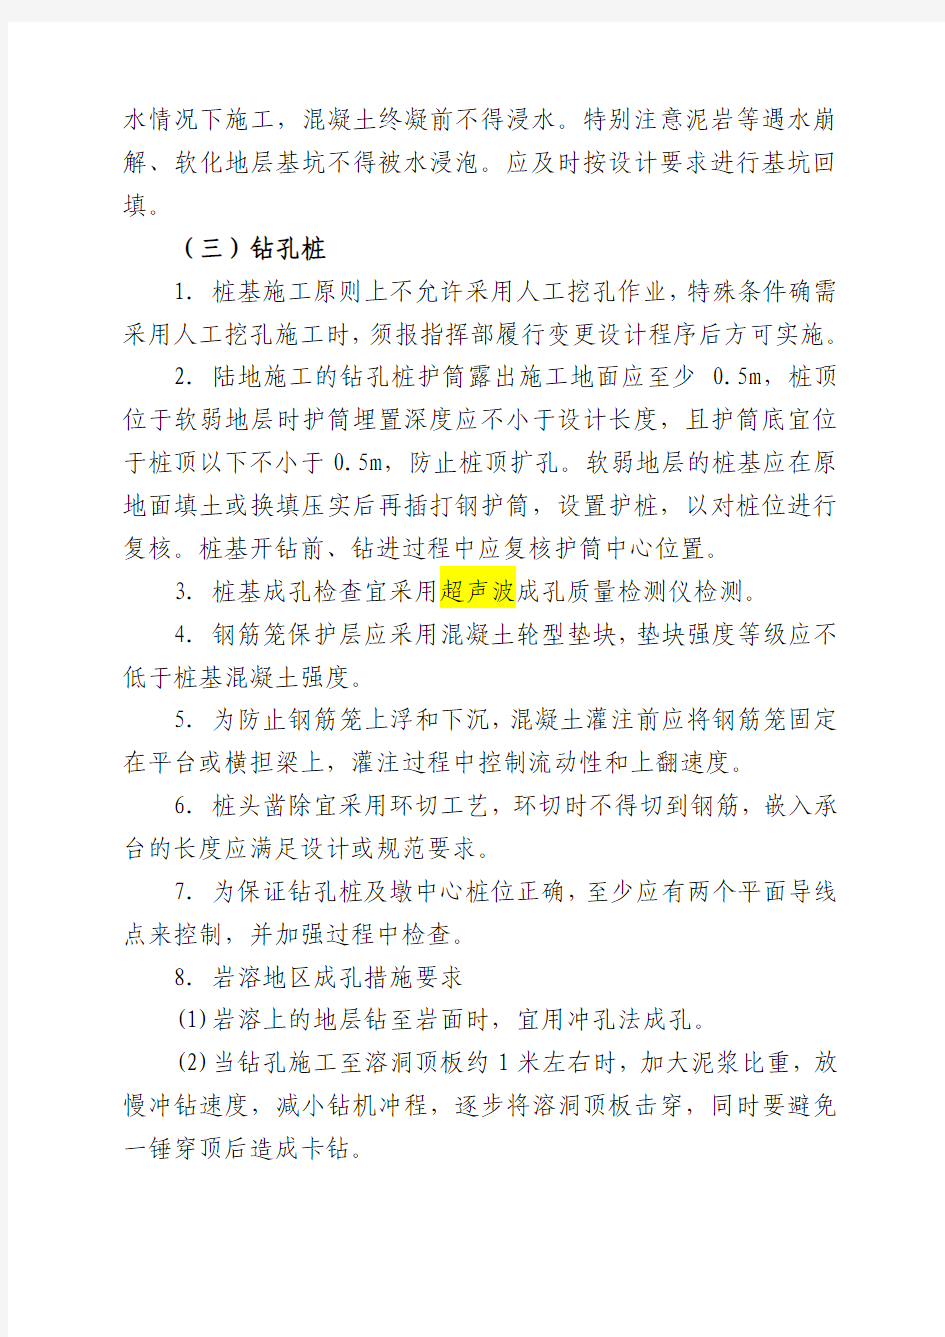 蒙西华中铁路股份有限公司关于确保蒙华铁路桥梁质量安全的指导意见2015-12-25定稿